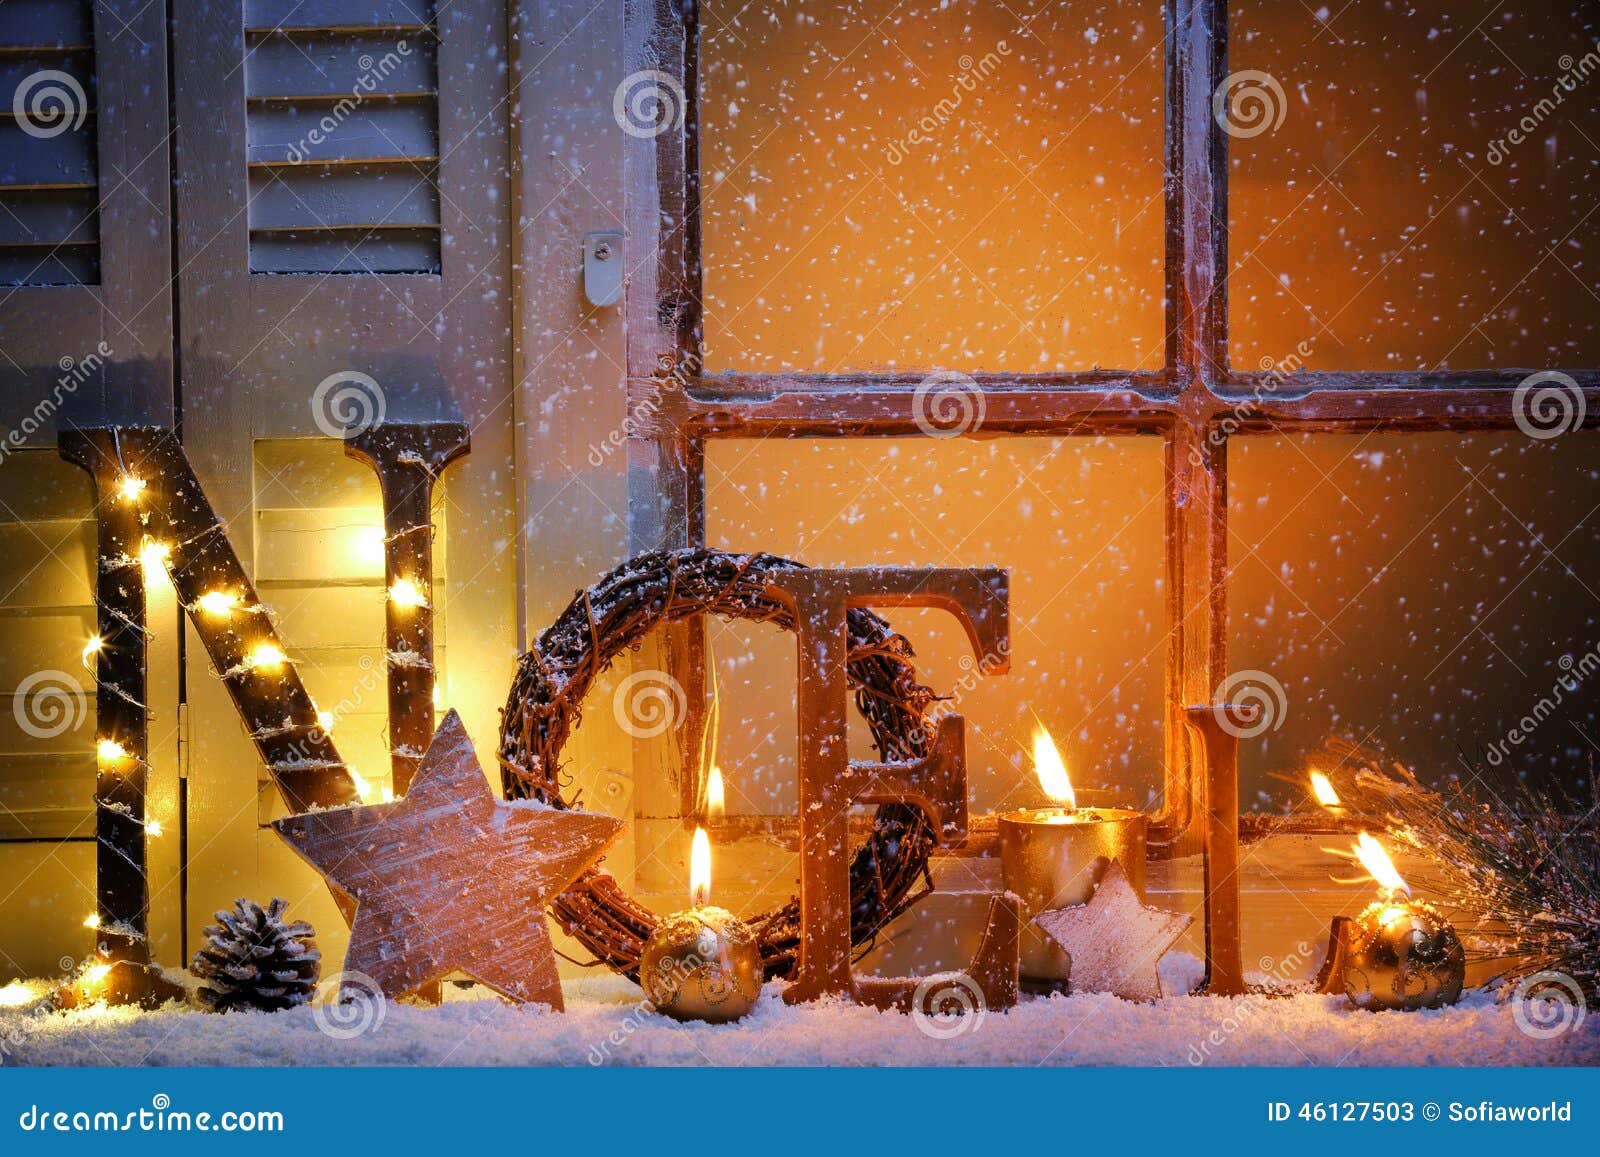 Christmas window stock image. Image of burning, illumination - 46127503